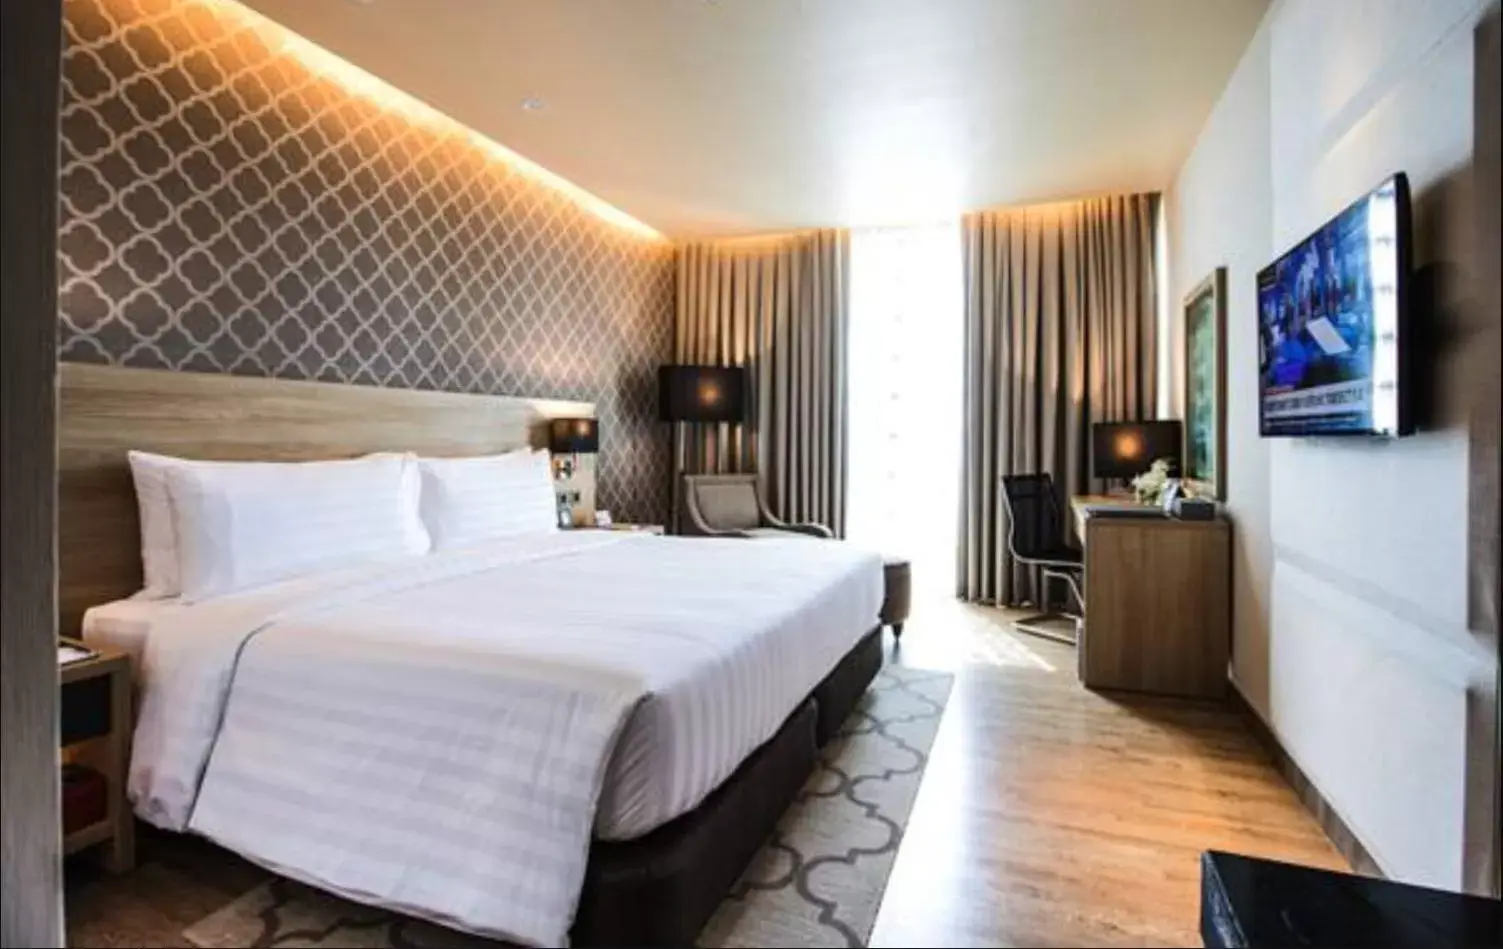 Bed in bai Hotel Cebu